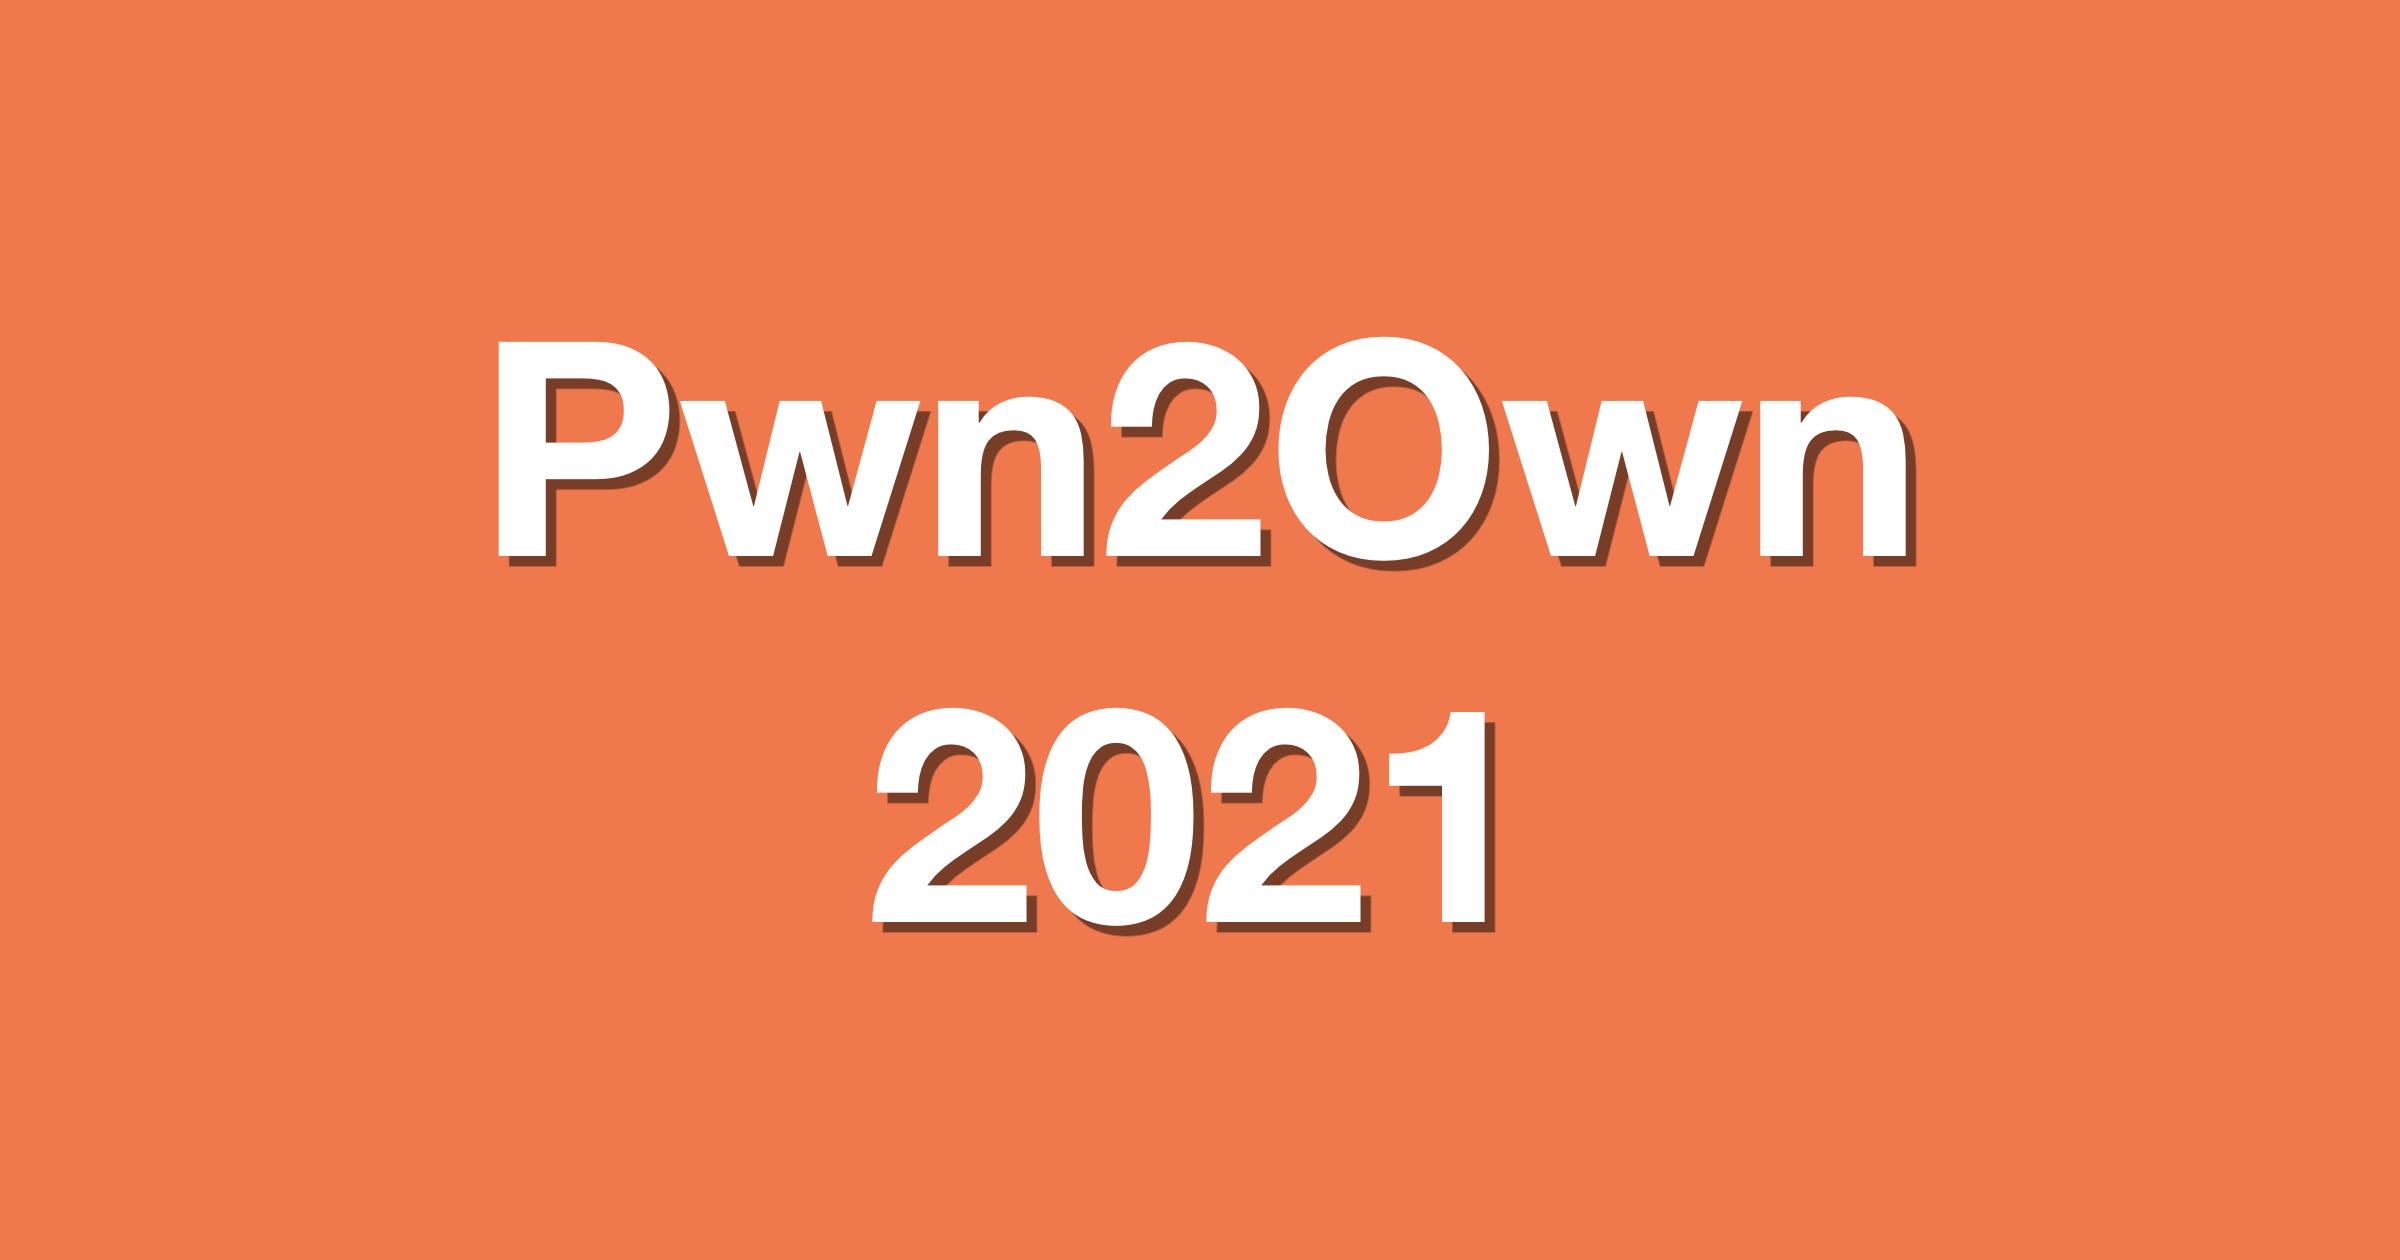 Pwn2own 2021